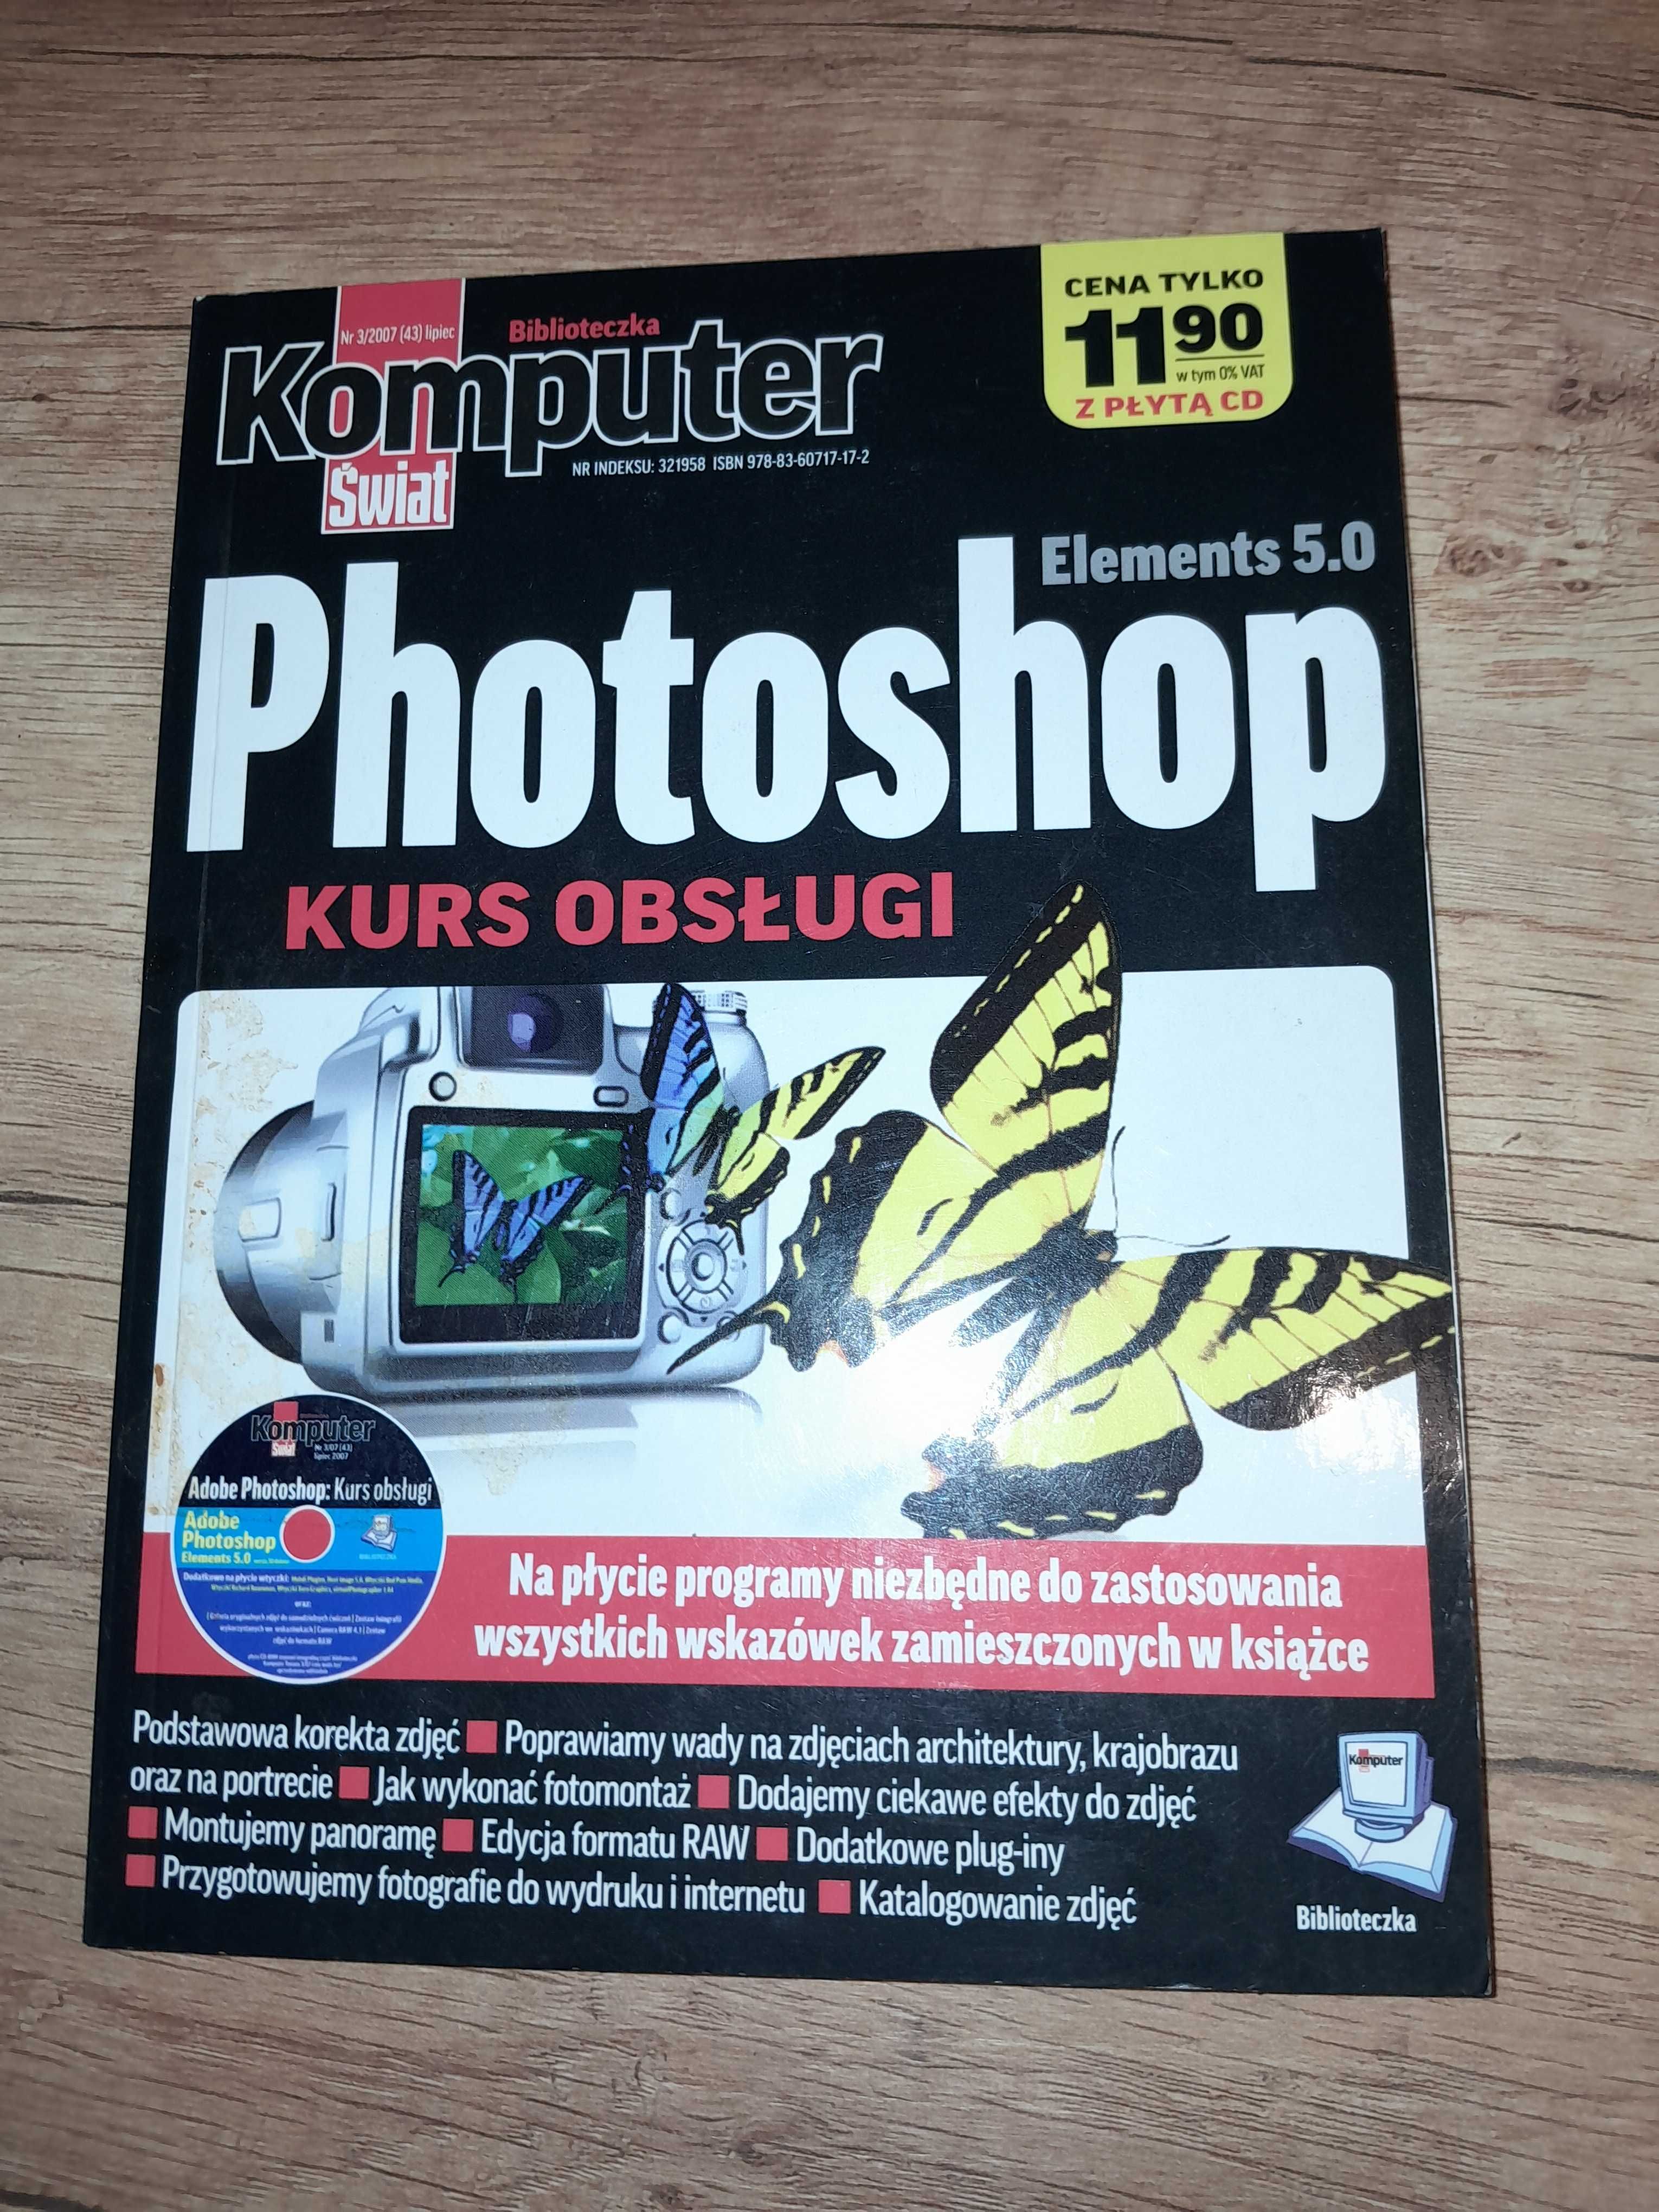 Komputer Świat Photoshop  Kurs obsługi + CD